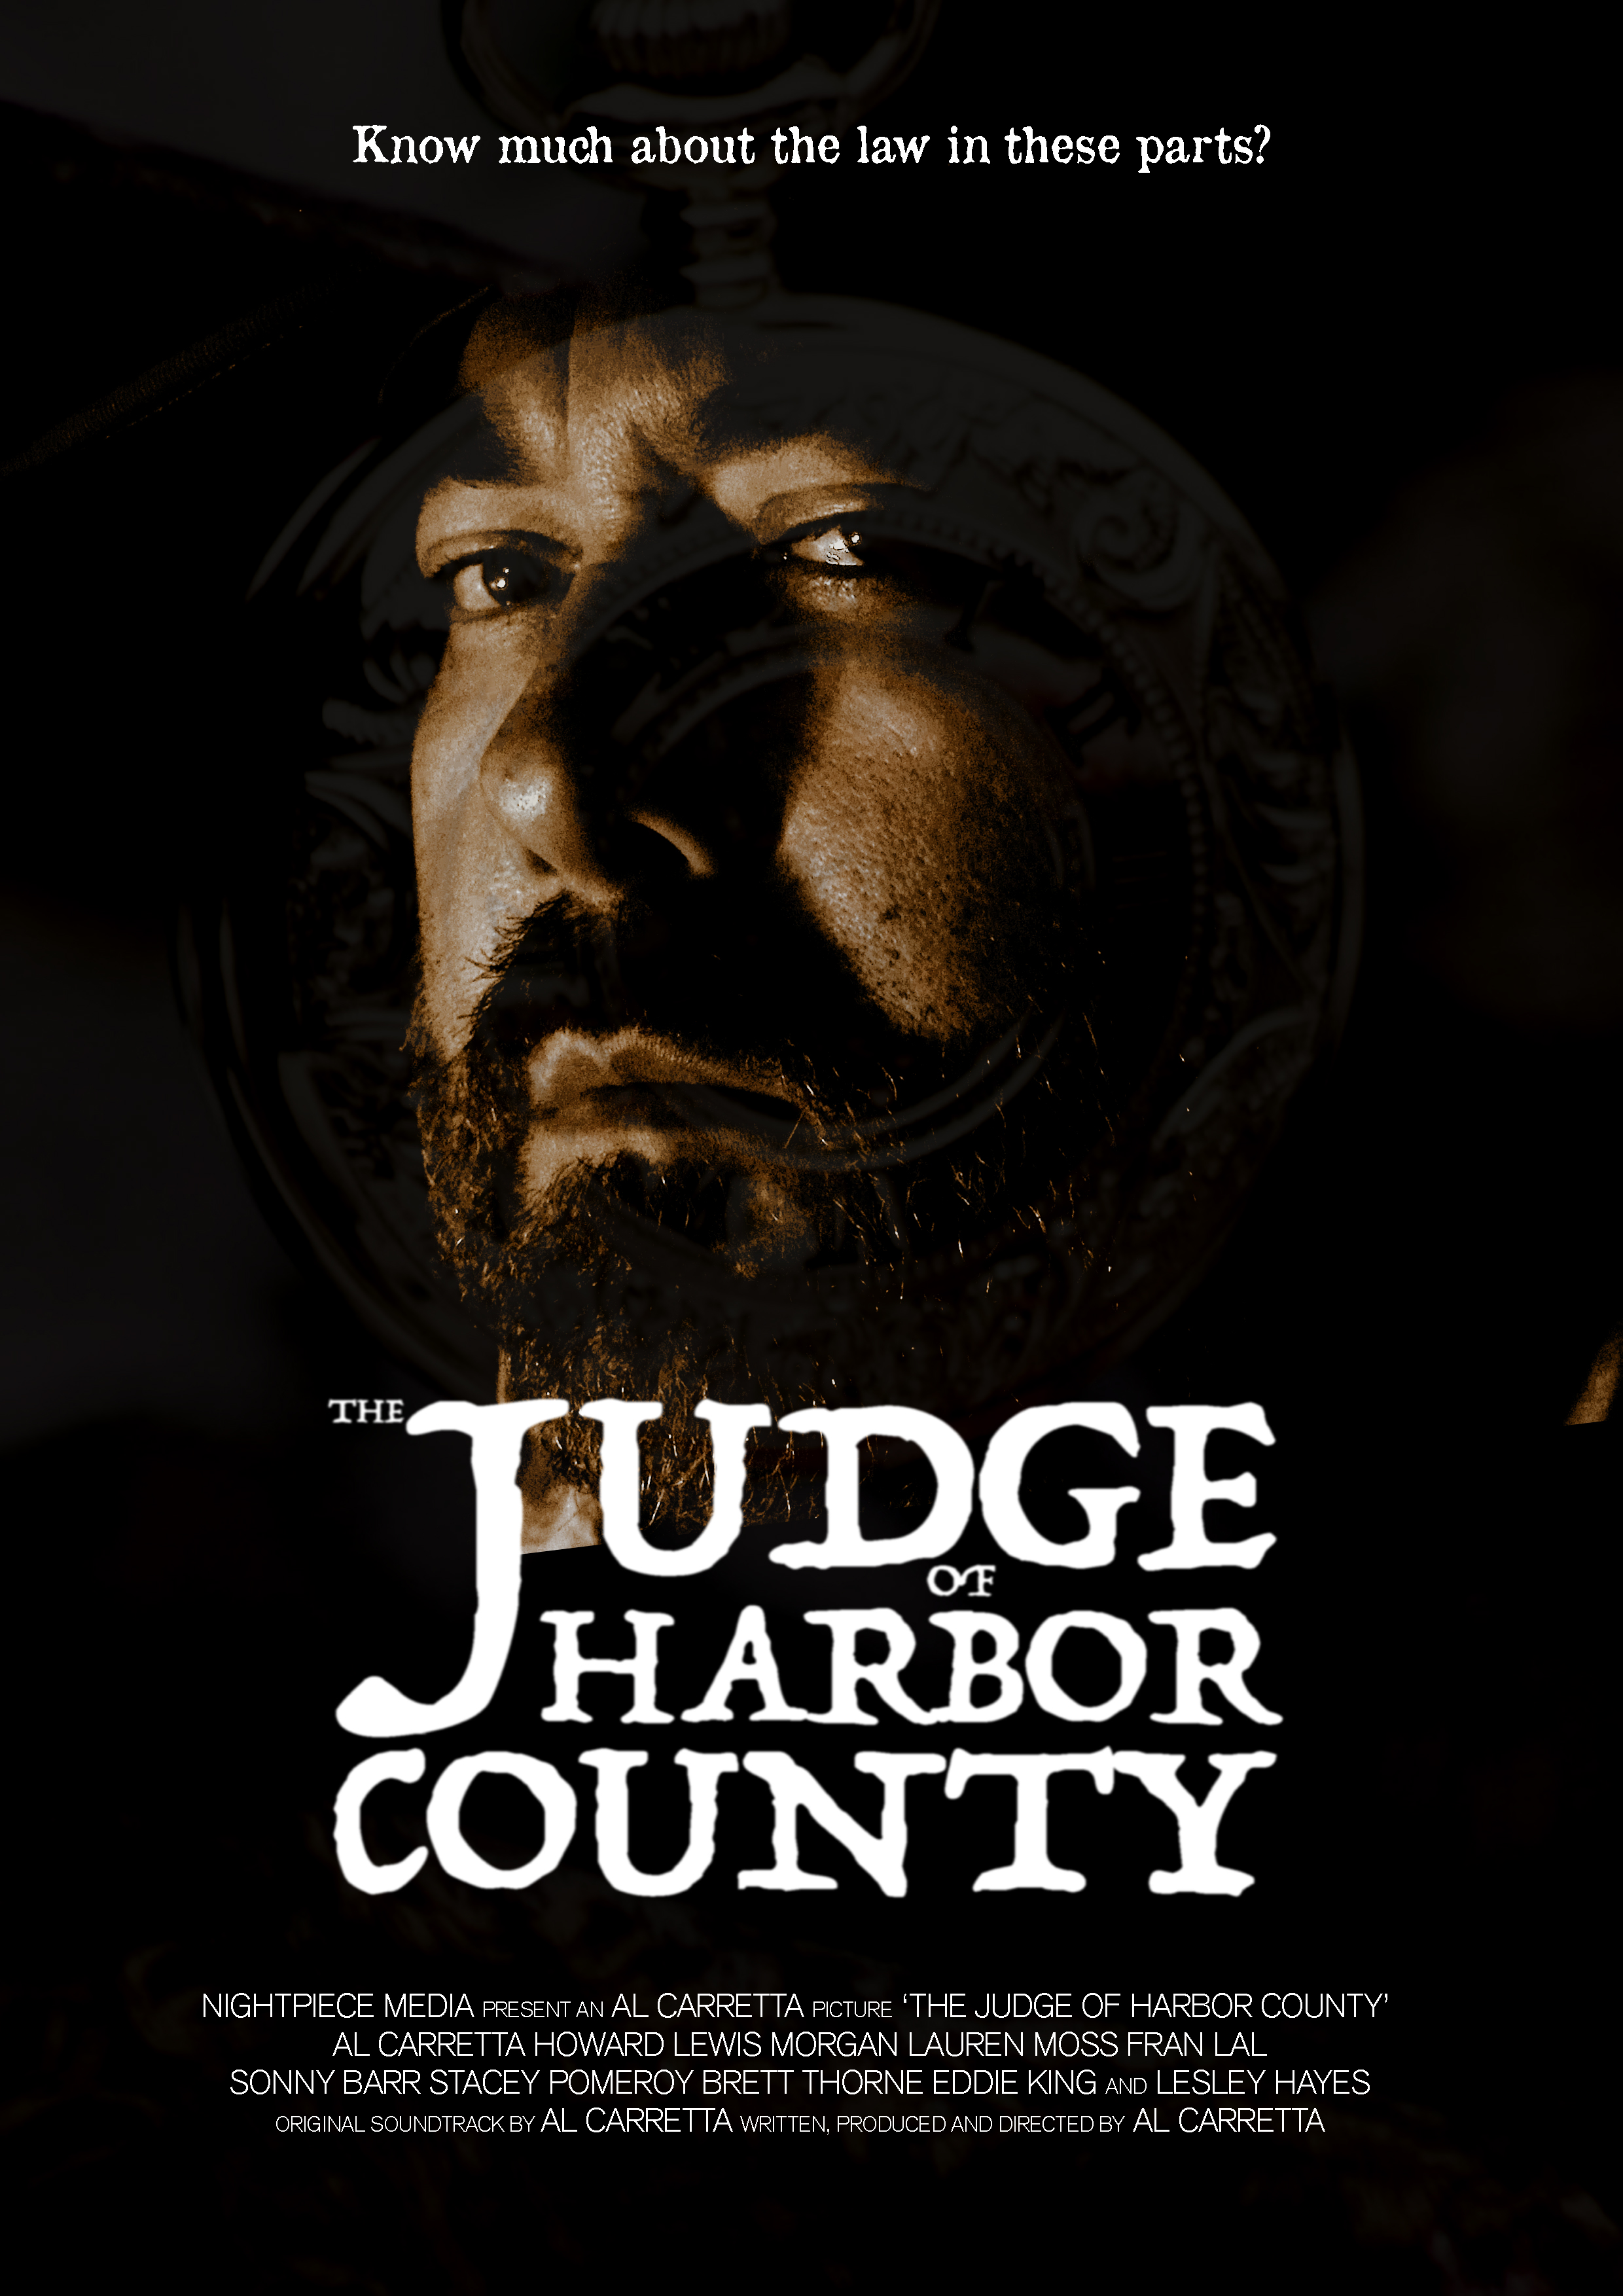 Nonton film The Judge of Harbor County layarkaca21 indoxx1 ganool online streaming terbaru